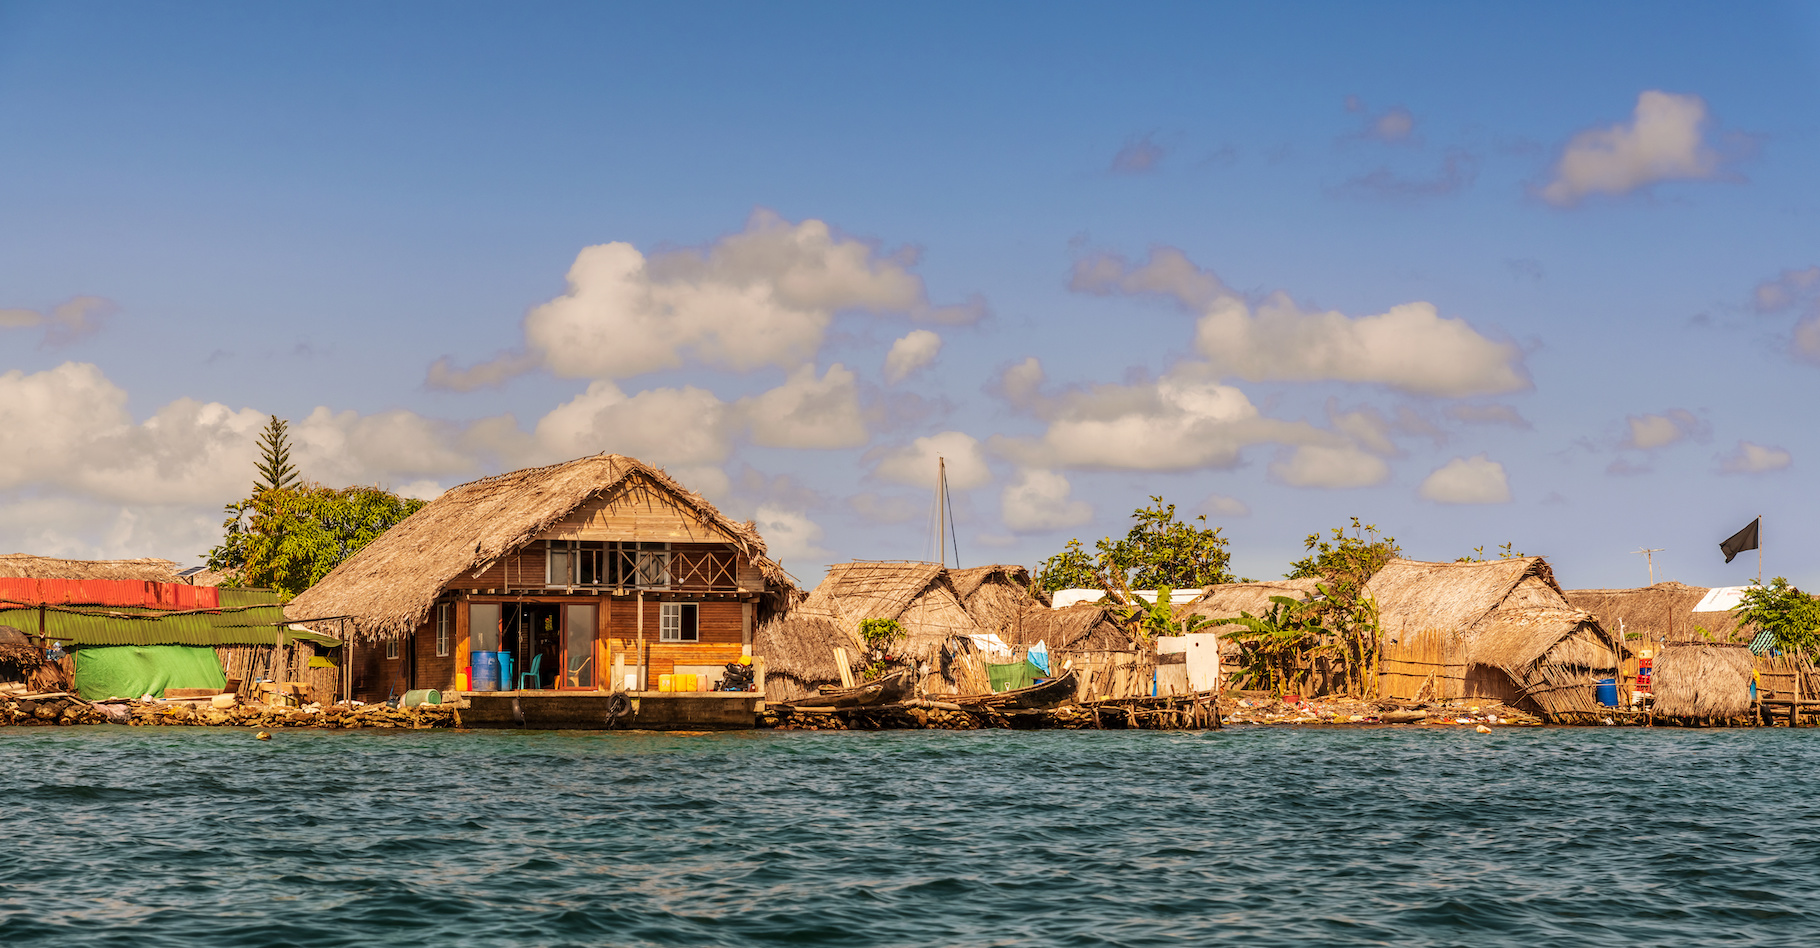 Le peuple Guna vit dans les Caraïbes, sur des îles menacées de submersion par la montée du niveau de la mer due au réchauffement climatique. Un plan pour les sauver est en cours. © Marek, Adobe Stock